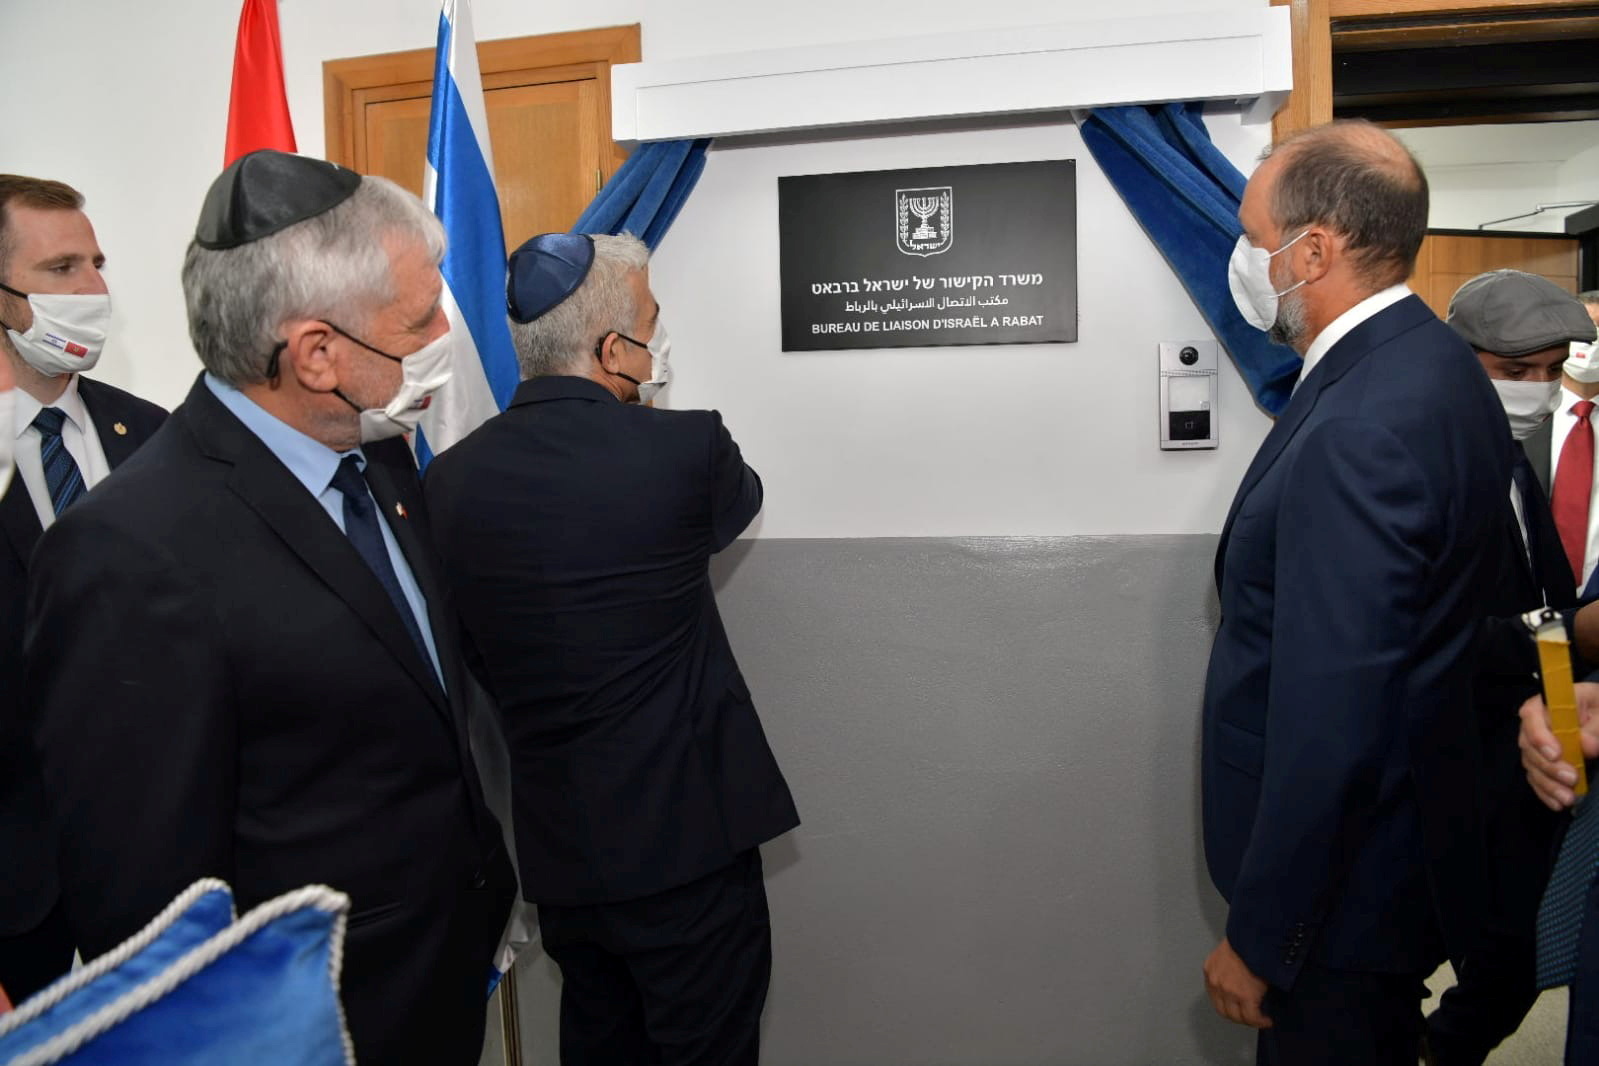 El ministro de Asuntos Exteriores de Israel, Yair Lapid, inaugura la misión diplomática de Israel, en presencia del ministro Delegado en el Ministerio de Asuntos Exteriores de Marruecos, Mohcine Jazouli, en Rabat, Marruecos, el 12 de agosto de 2021. Ministerio de Asuntos Exteriores de Israel/Handout via REUTERS